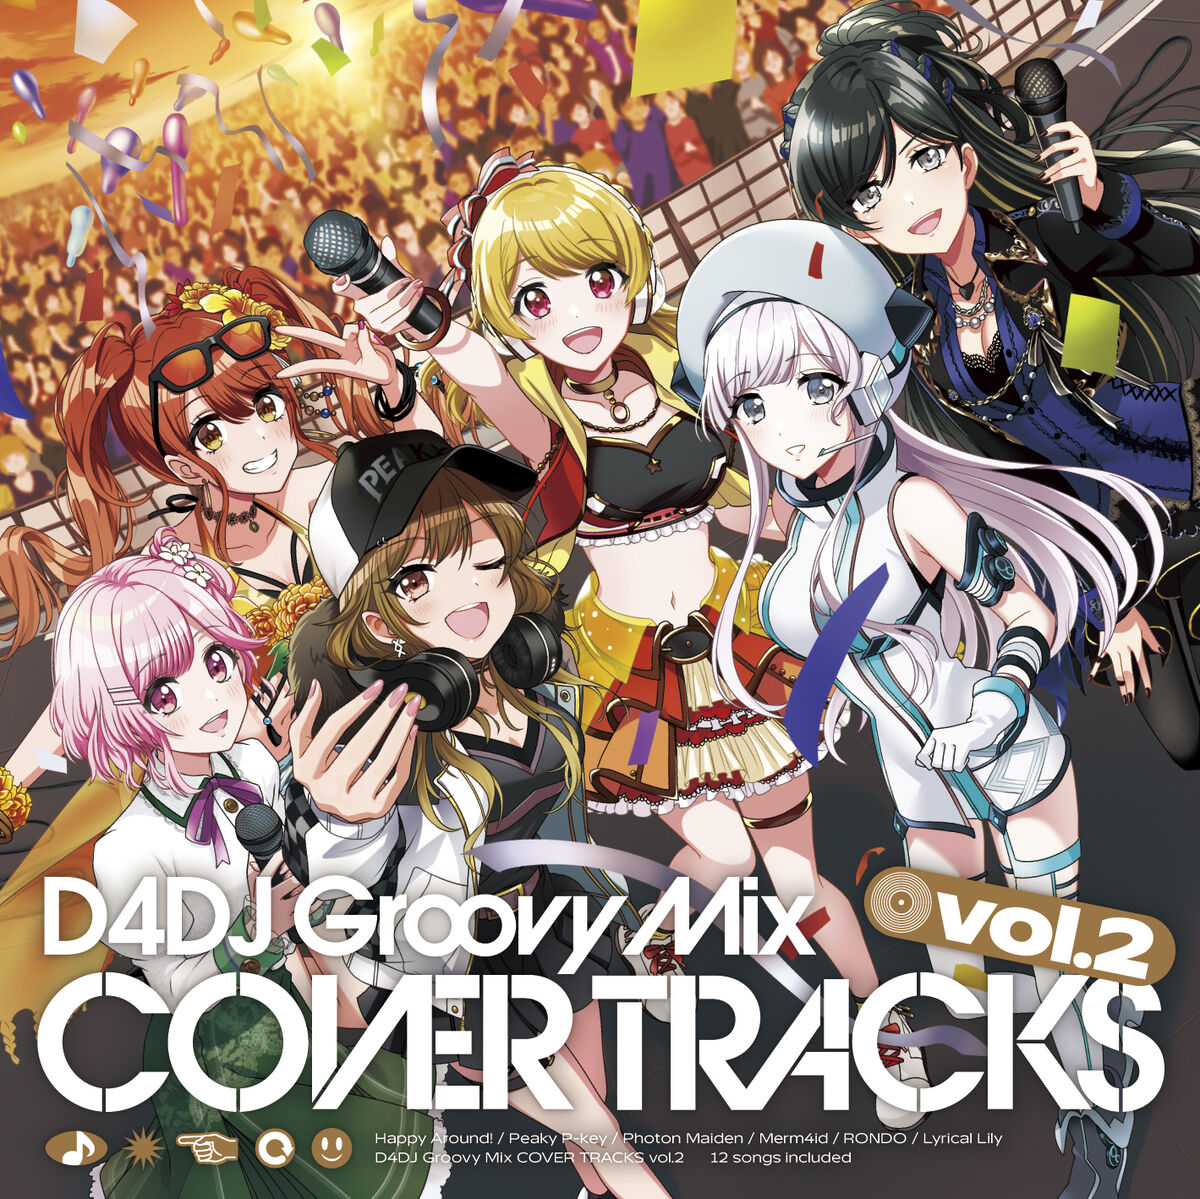 D4DJ Groovy Mix Cover Tracks Vol.2 | Dig Delight Direct Drive DJ 